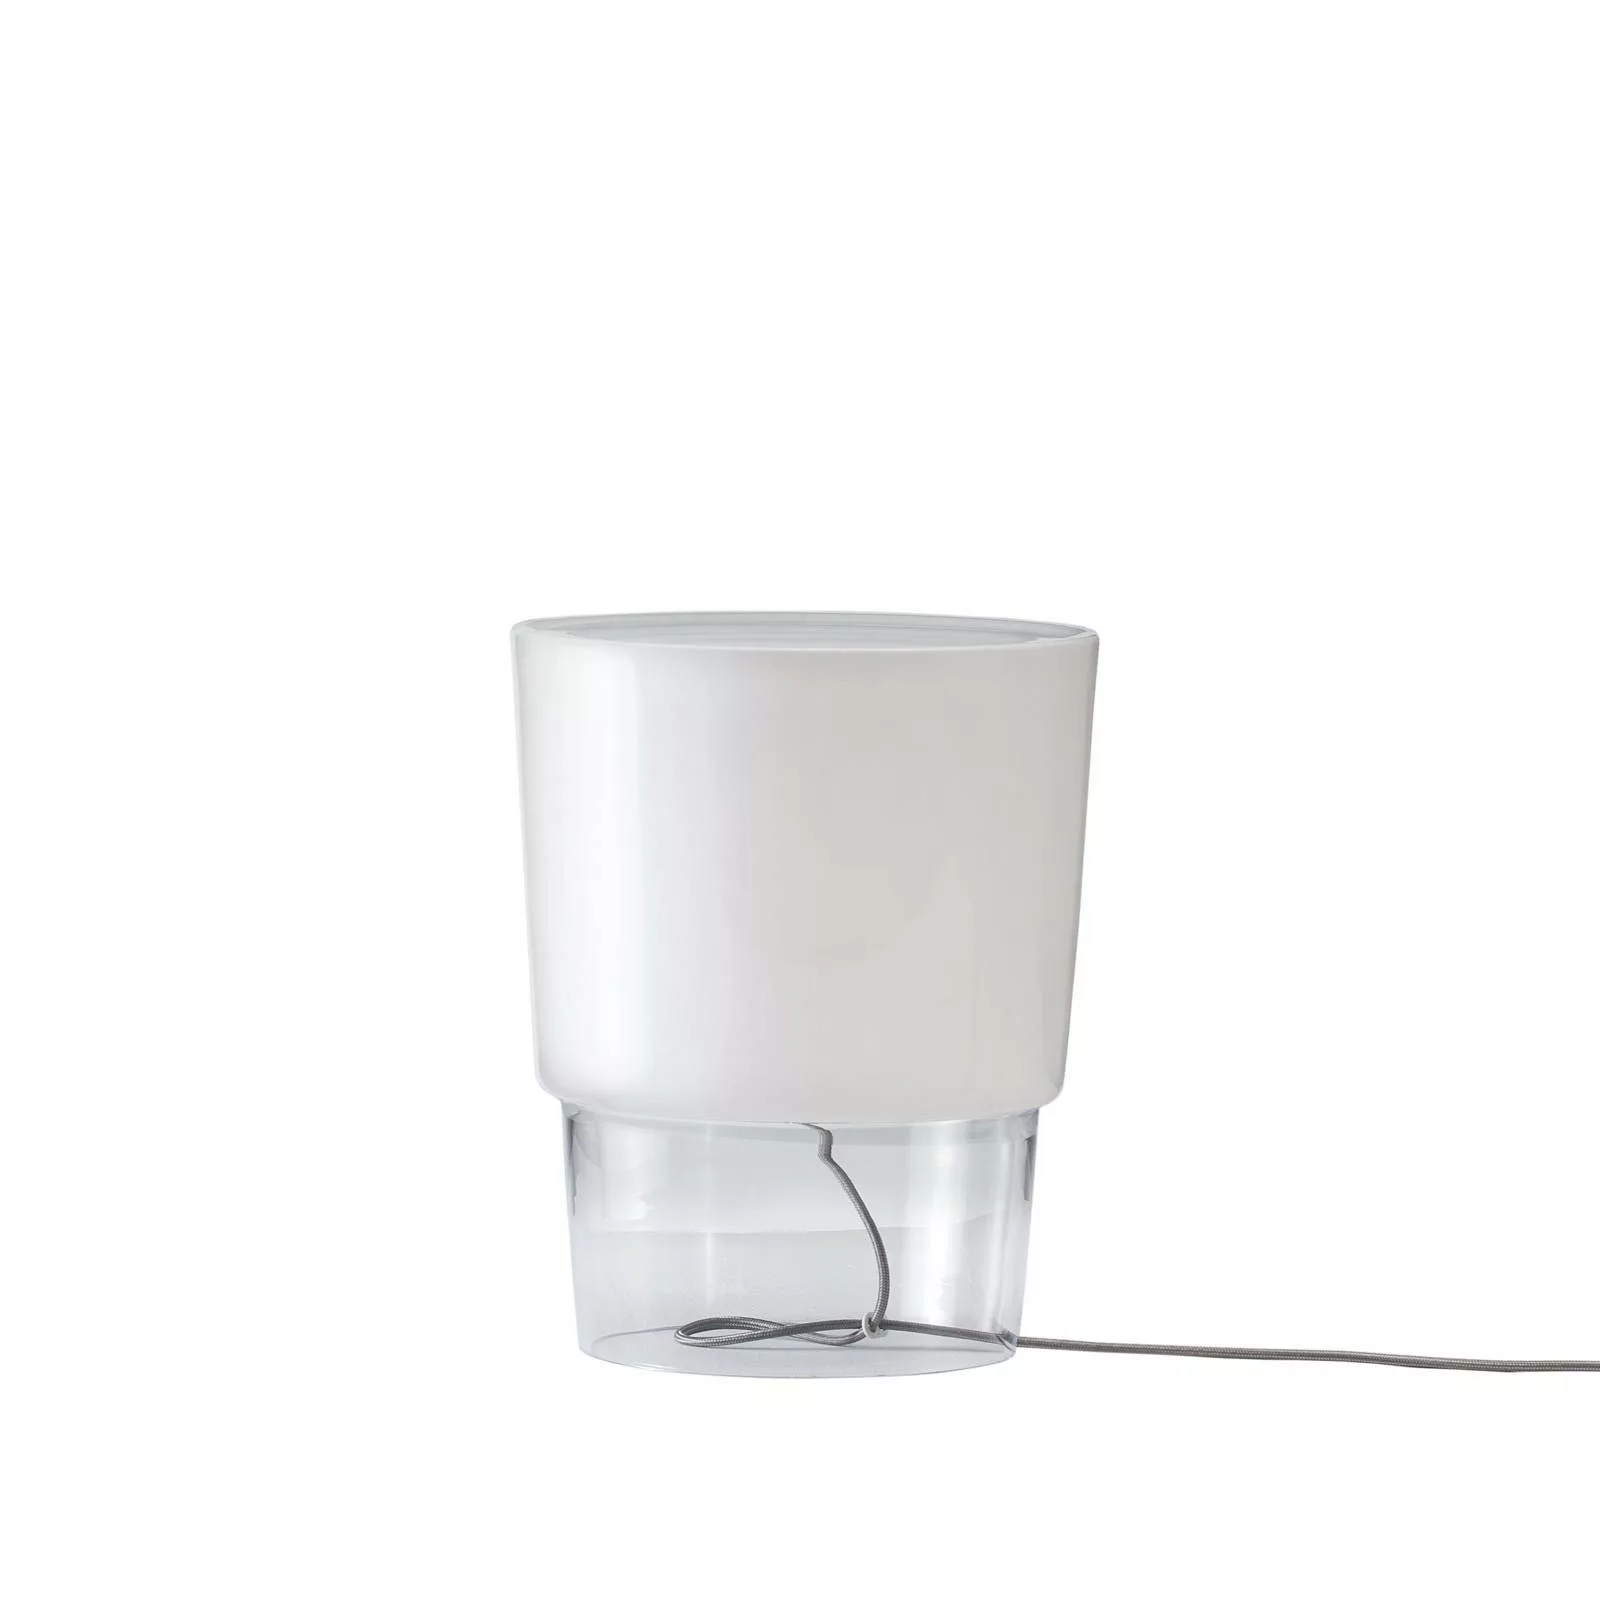 Prandina Vestale T3 Tischlampe weiß/klar günstig online kaufen